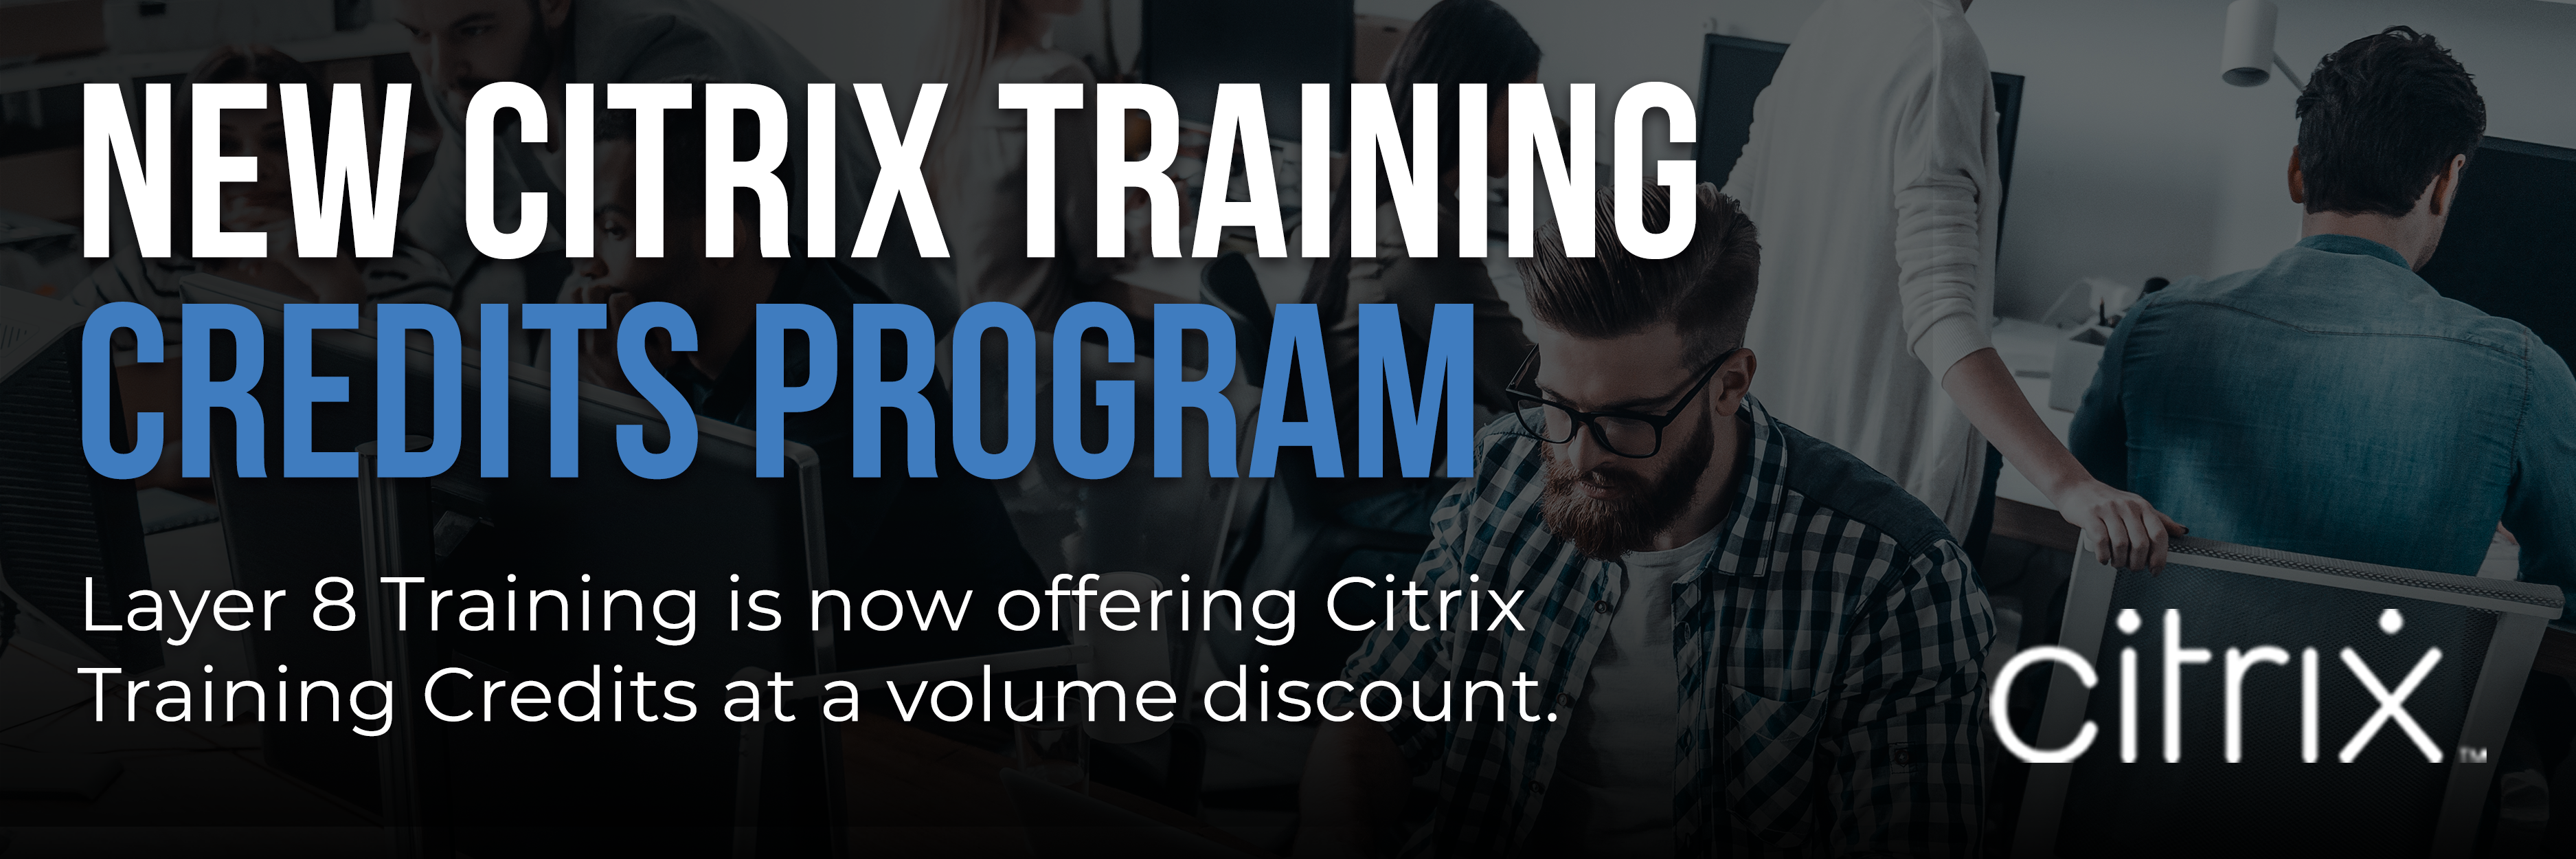 L8_New Citrix Training Credits Program_Blog Header